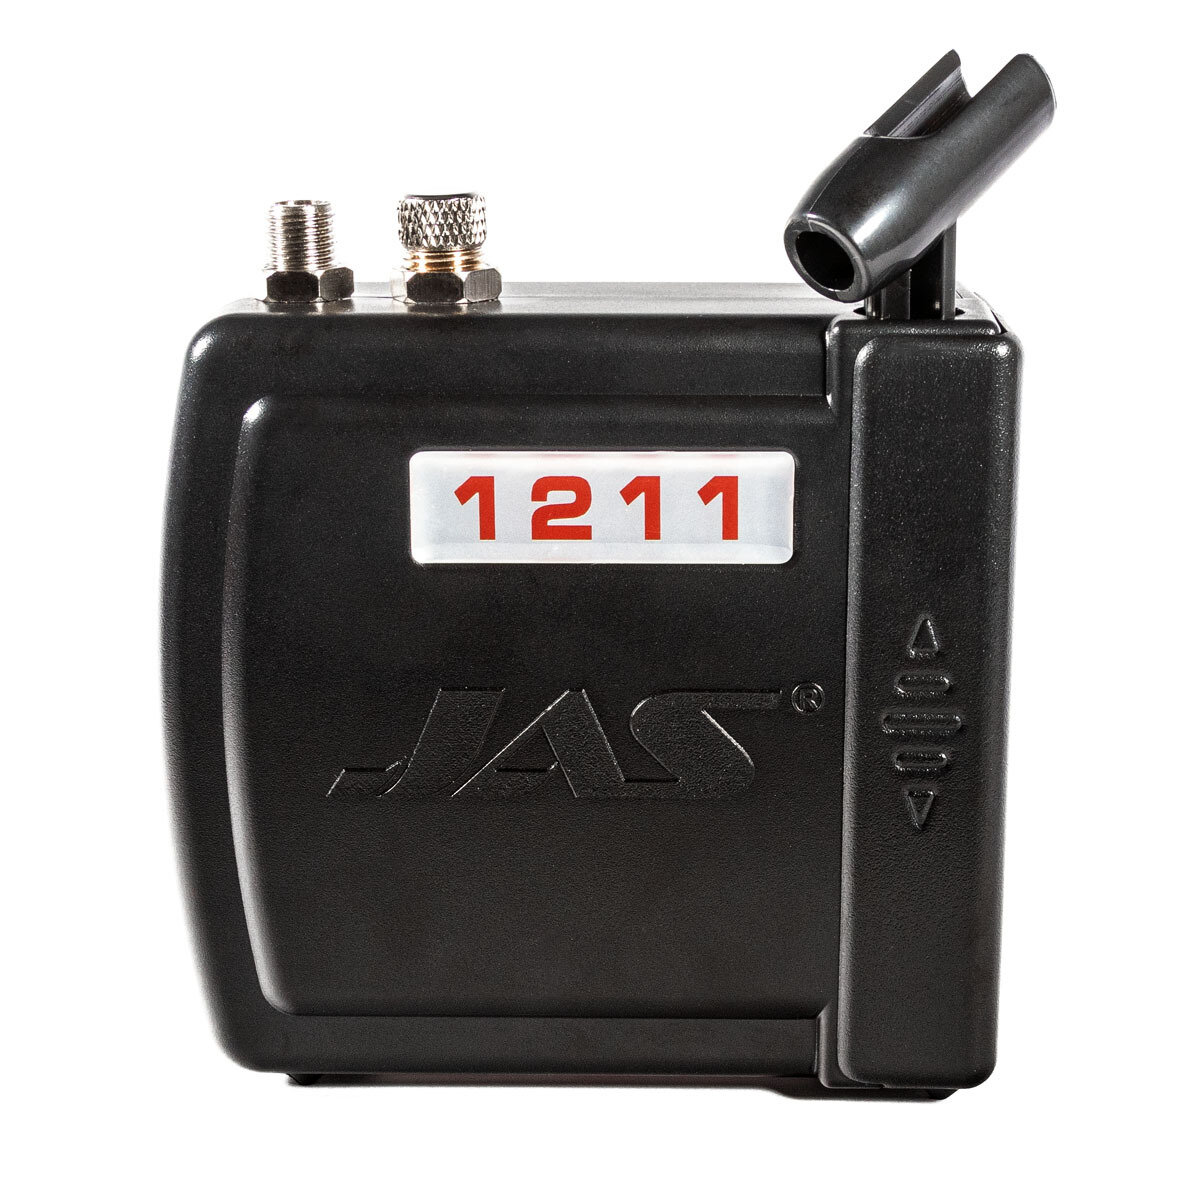 Мини-компрессор JAS-1211 с регулятором давления и автоматикой